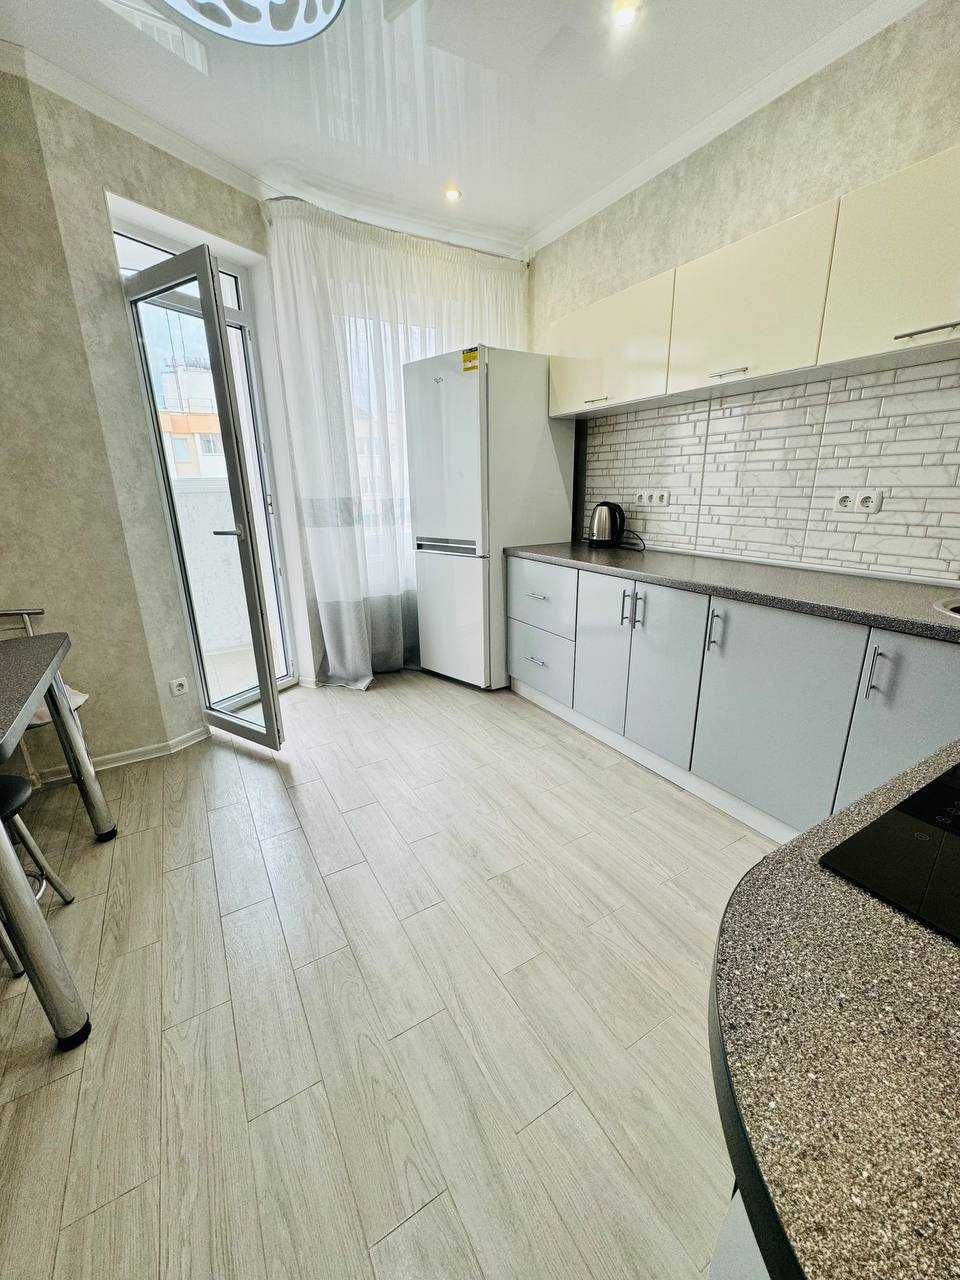 Продам 1 комн квартиру в новом жилом комплексе Радужный!!!